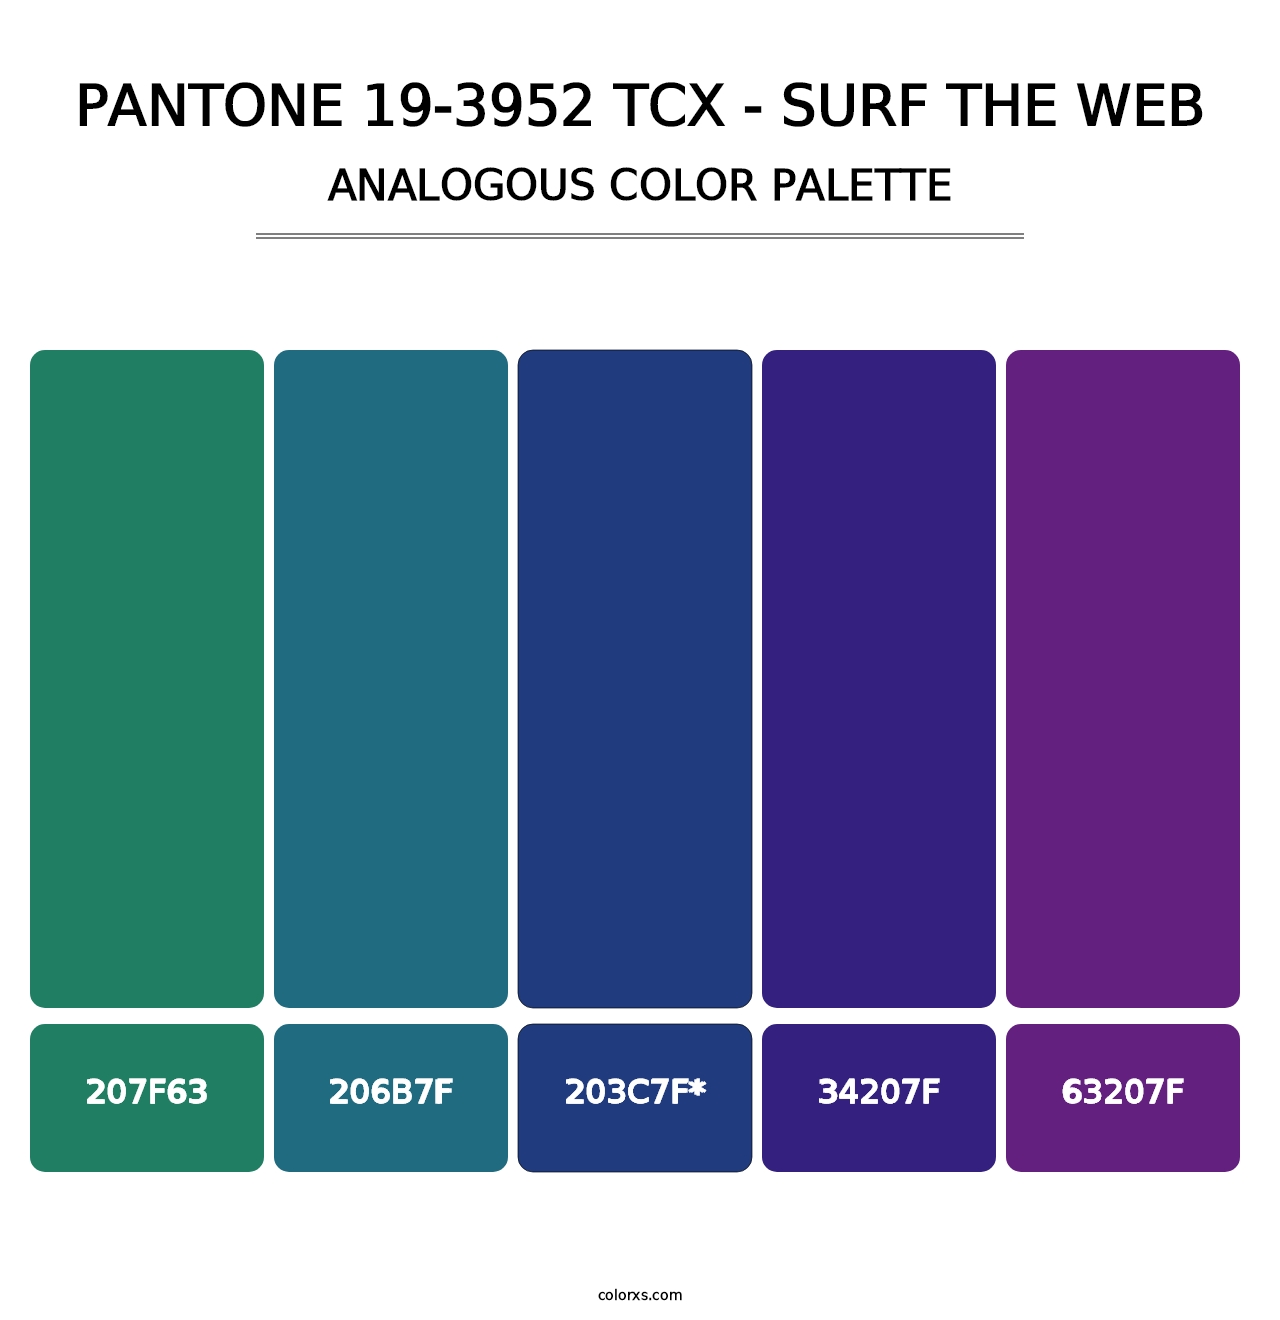 PANTONE 19-3952 TCX - Surf the Web - Analogous Color Palette